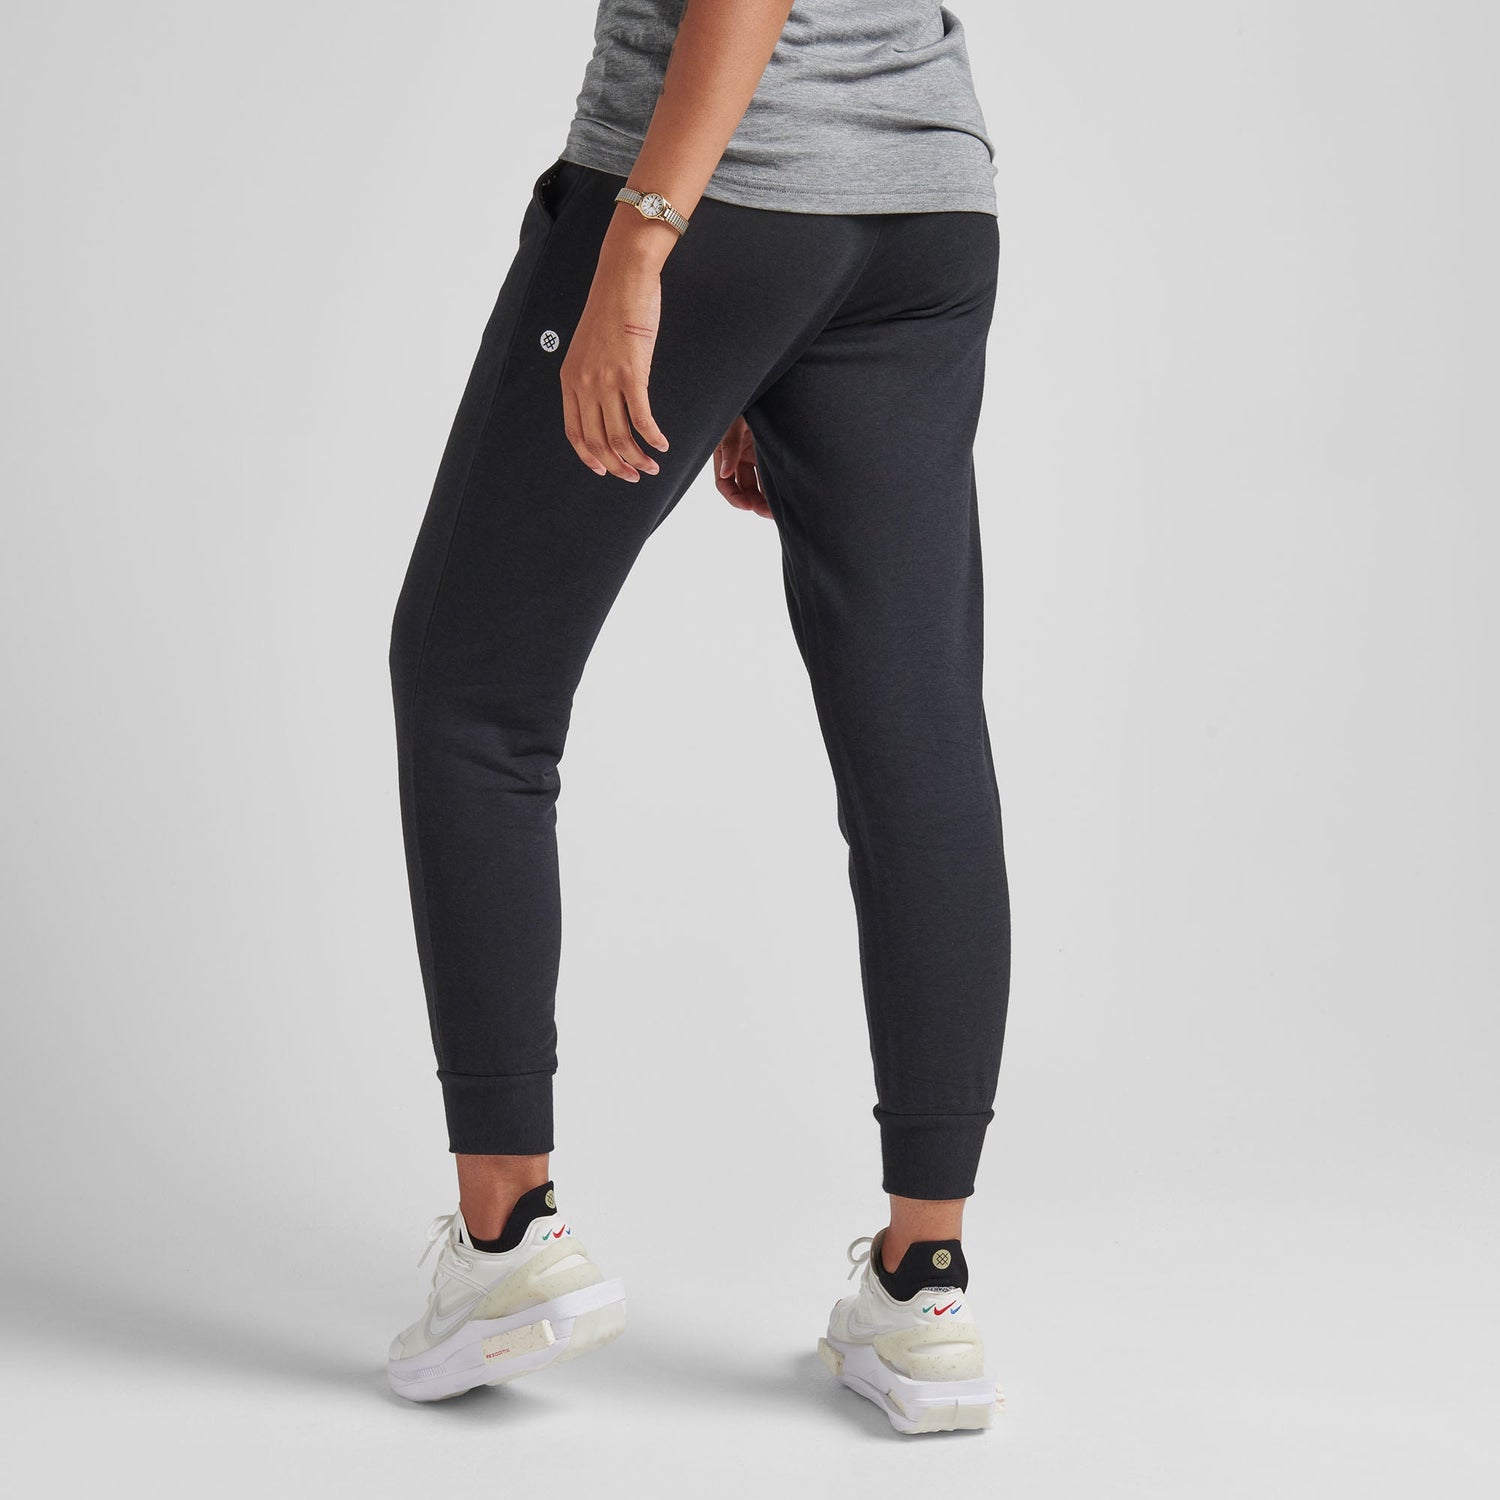 Pantalon de jogging pour femme noir Shelter de Stance